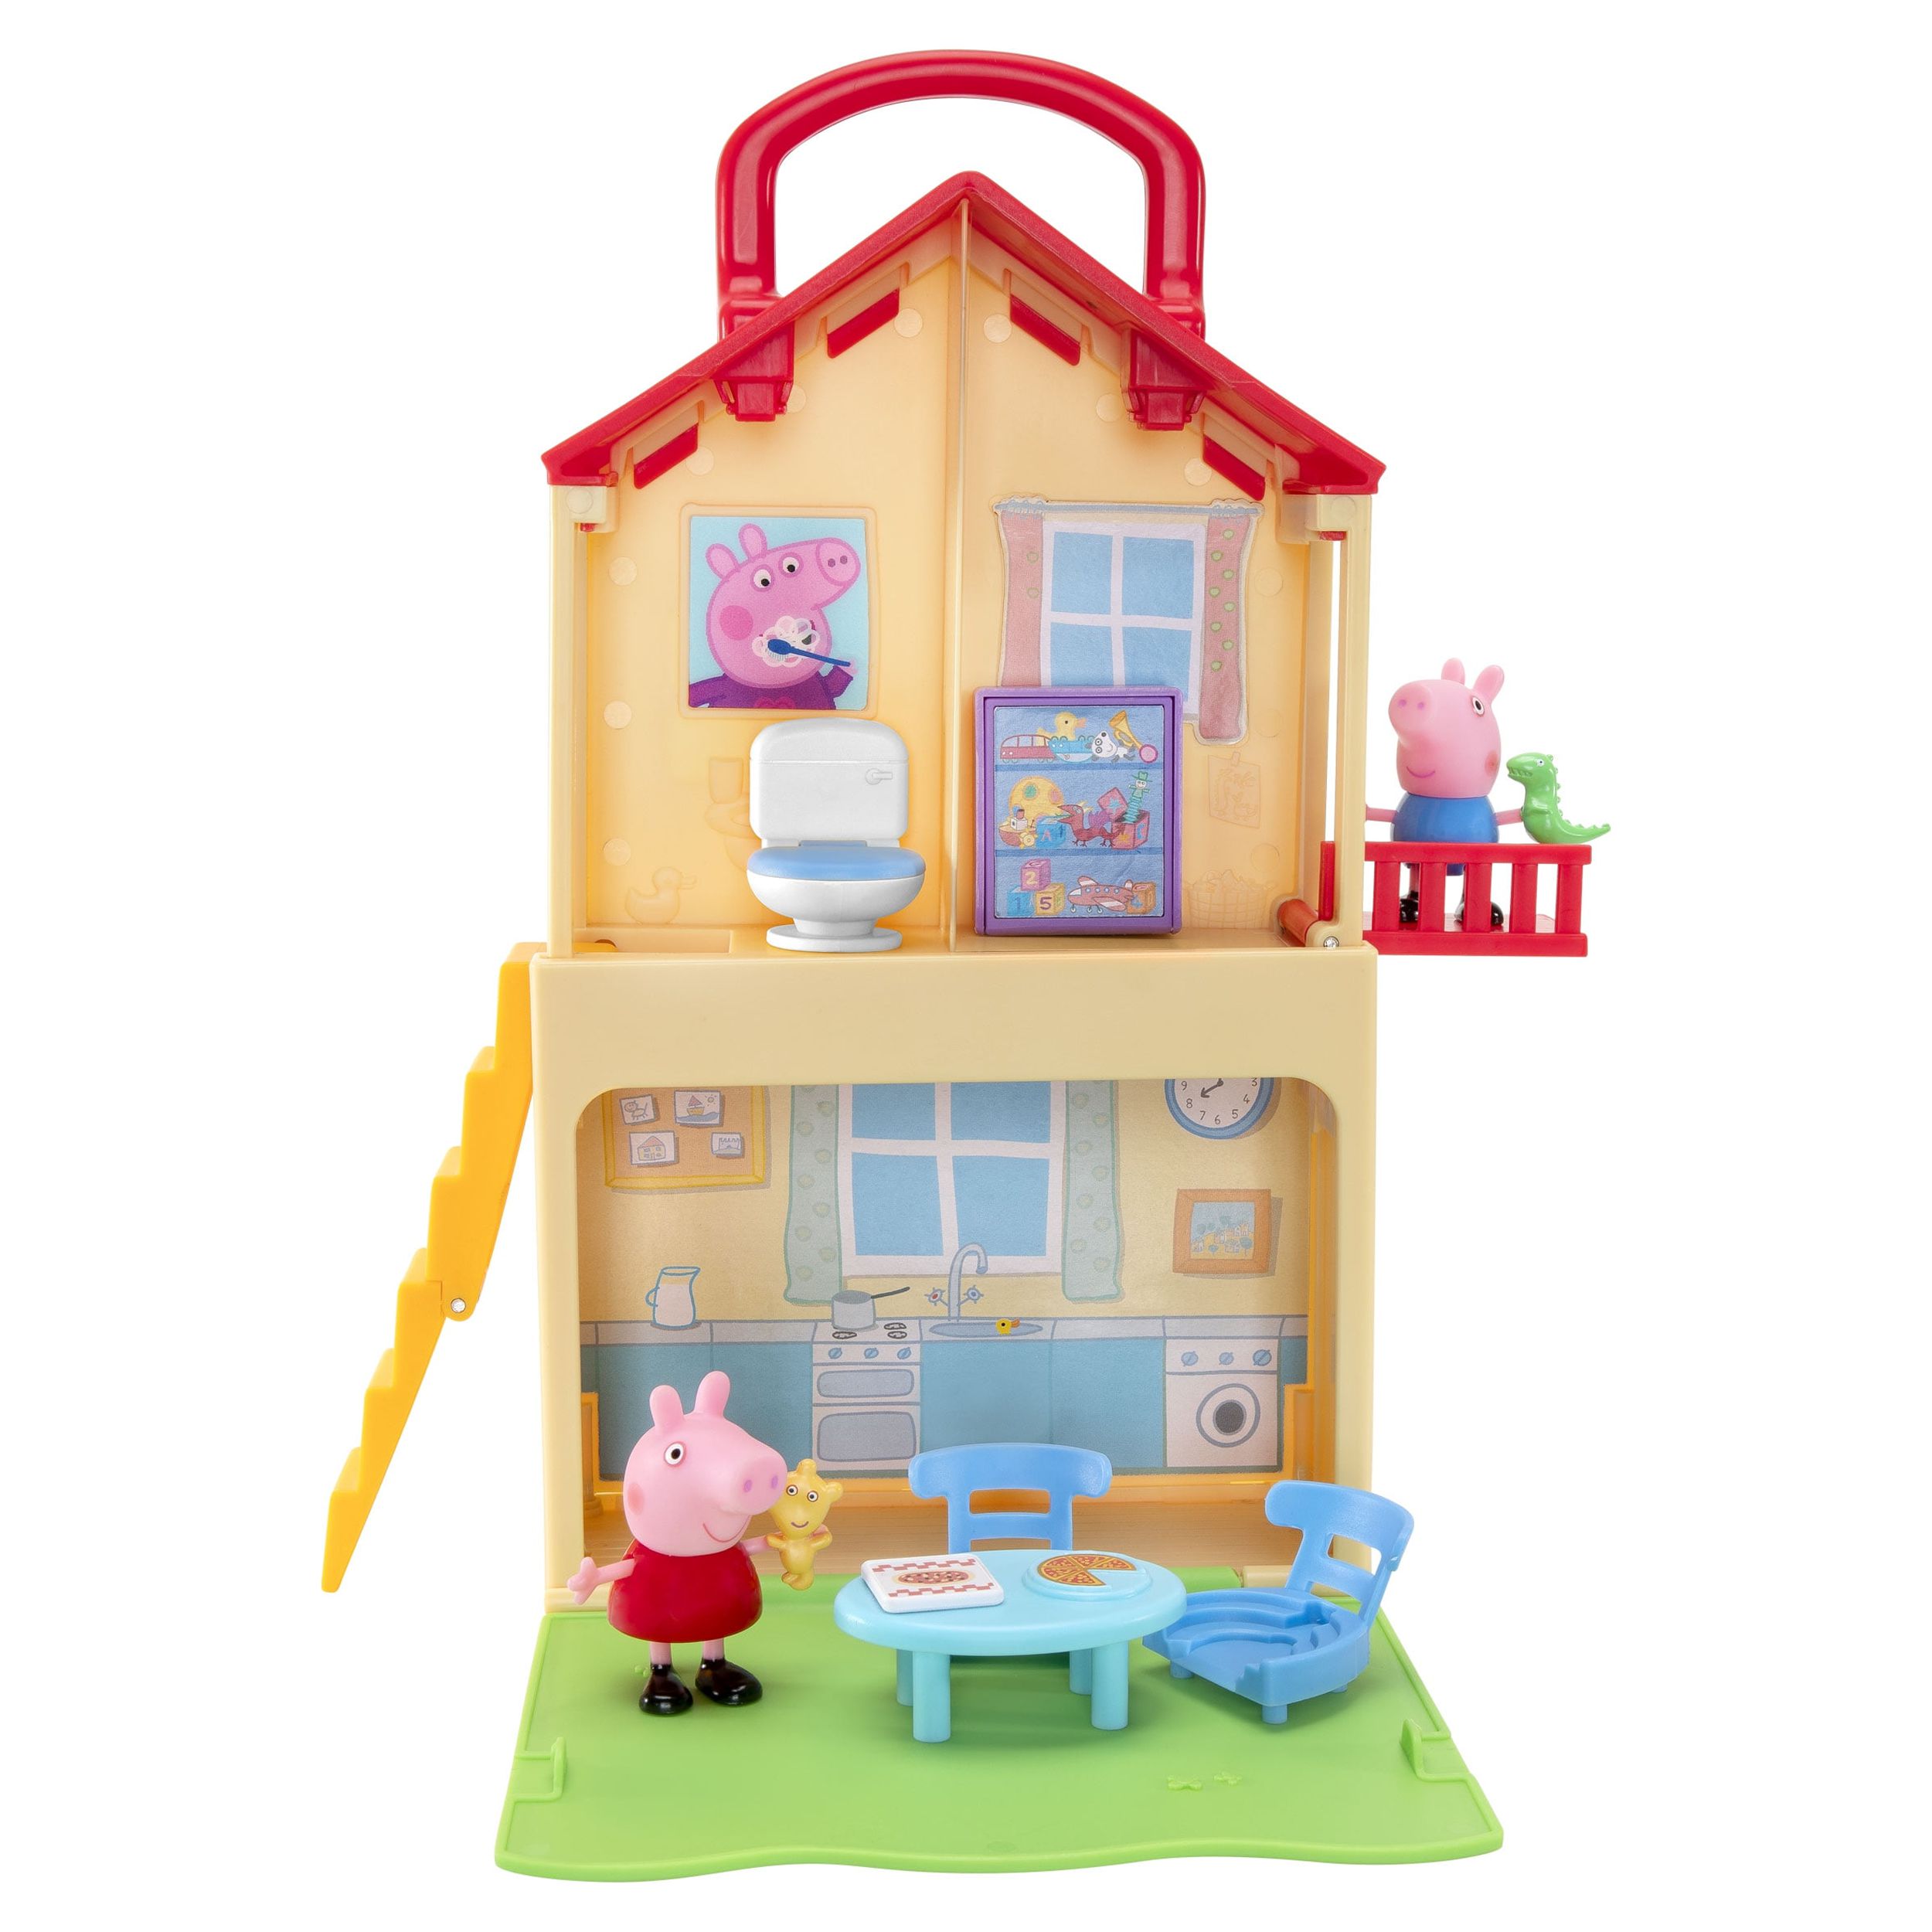 Peppa Pig Pop n’ Play House Playset - image 1 of 11